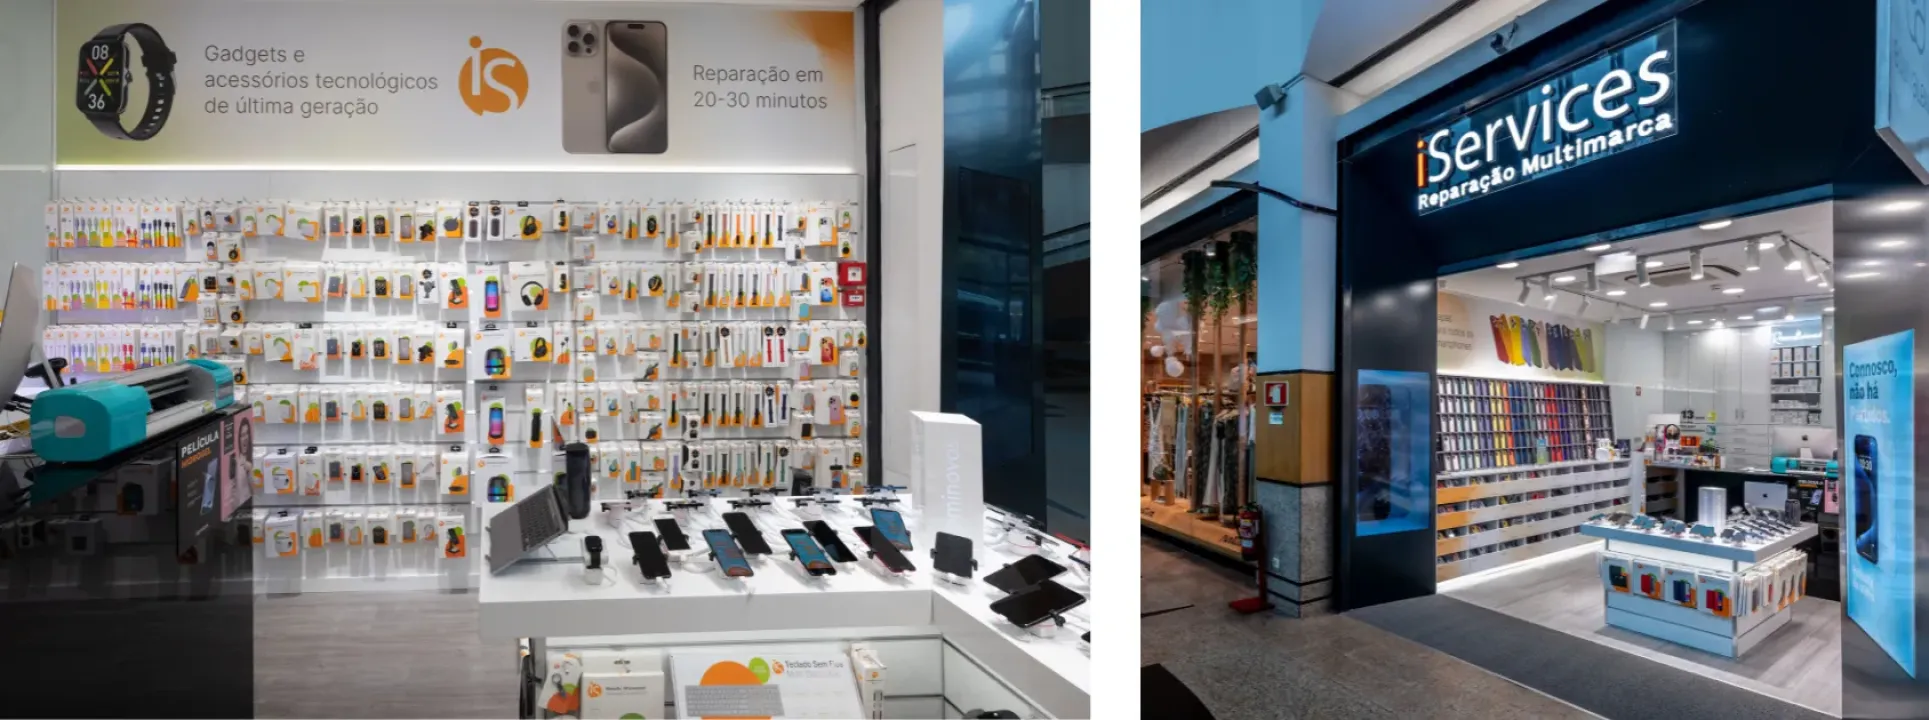 iServices abre segunda loja em Guimarães